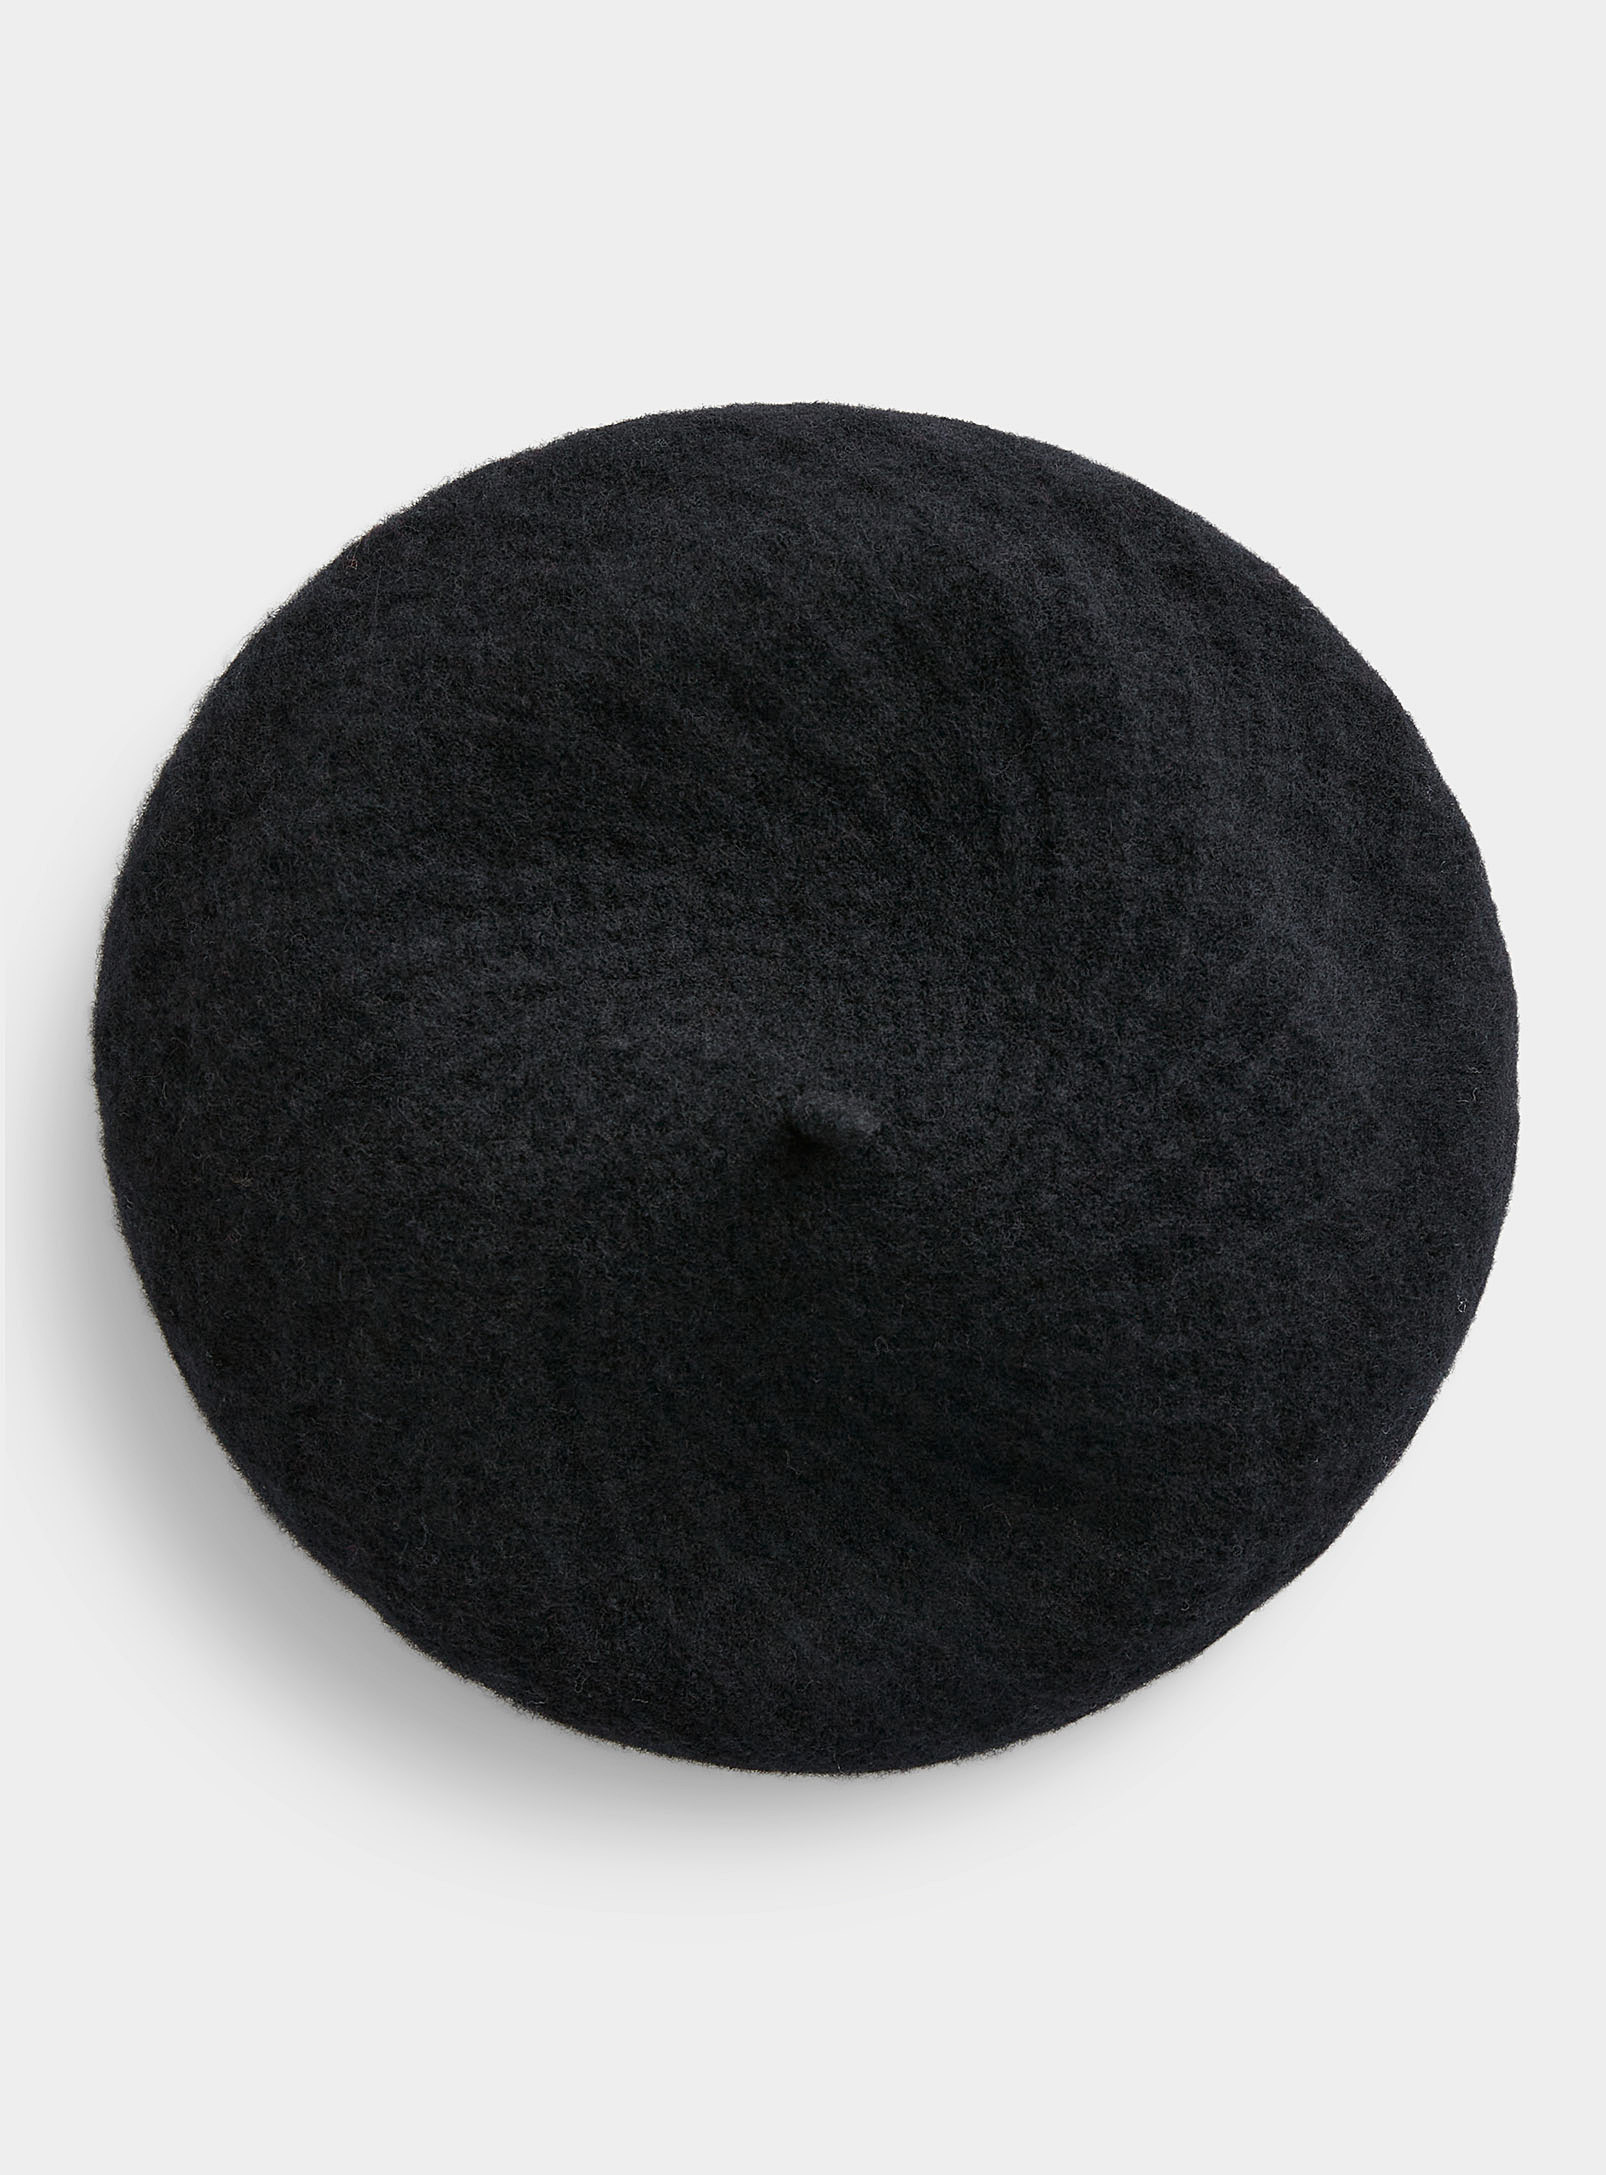 Canadian Hat Monochrome Diamond Wool Beret In Black